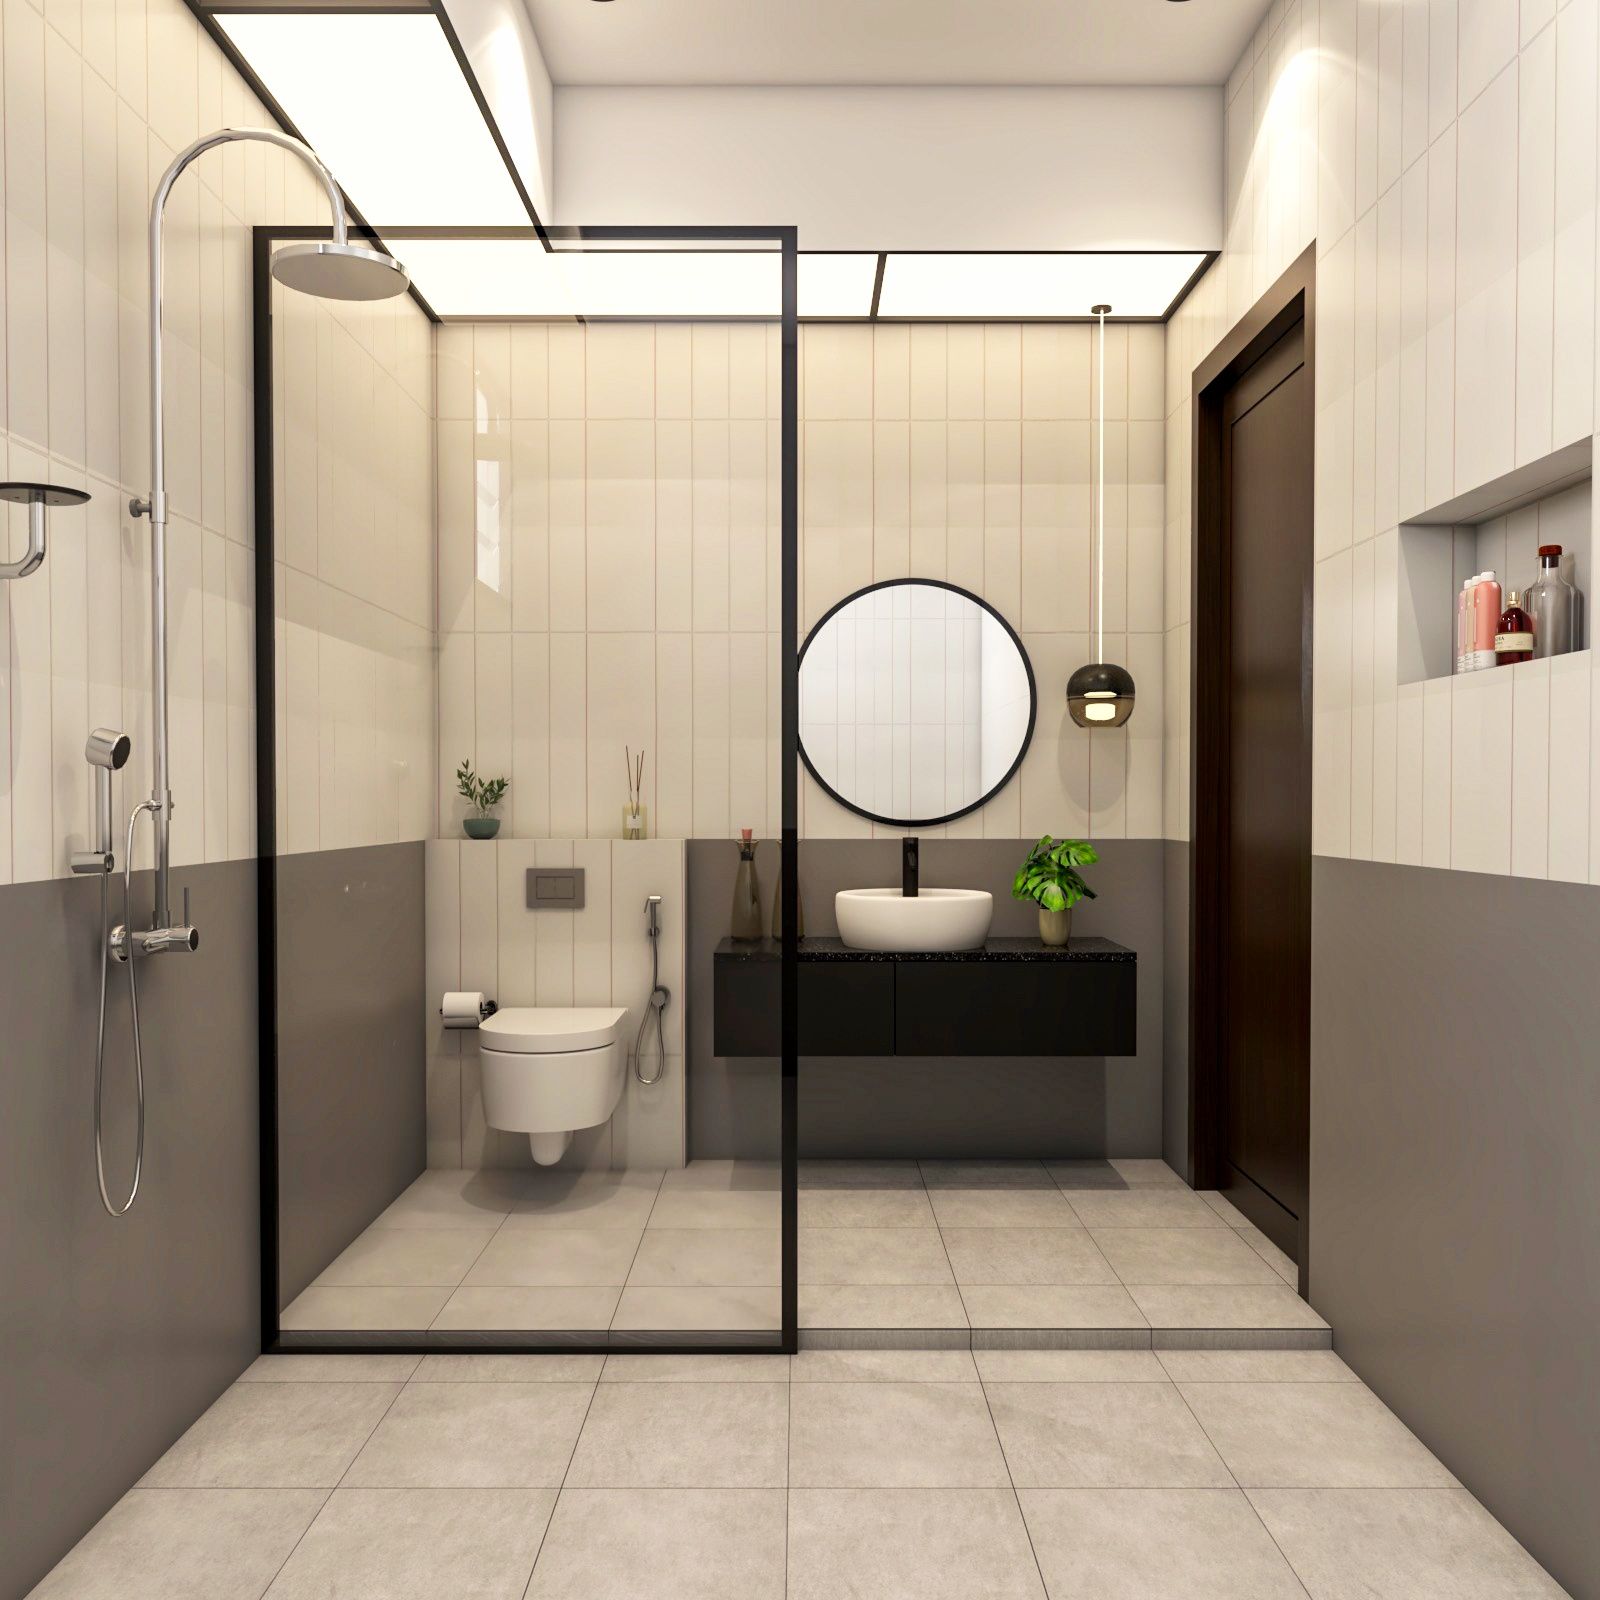 Contemporary Grey And Cream Bathroom Cabinet Design With Granite Bathroom Countertop